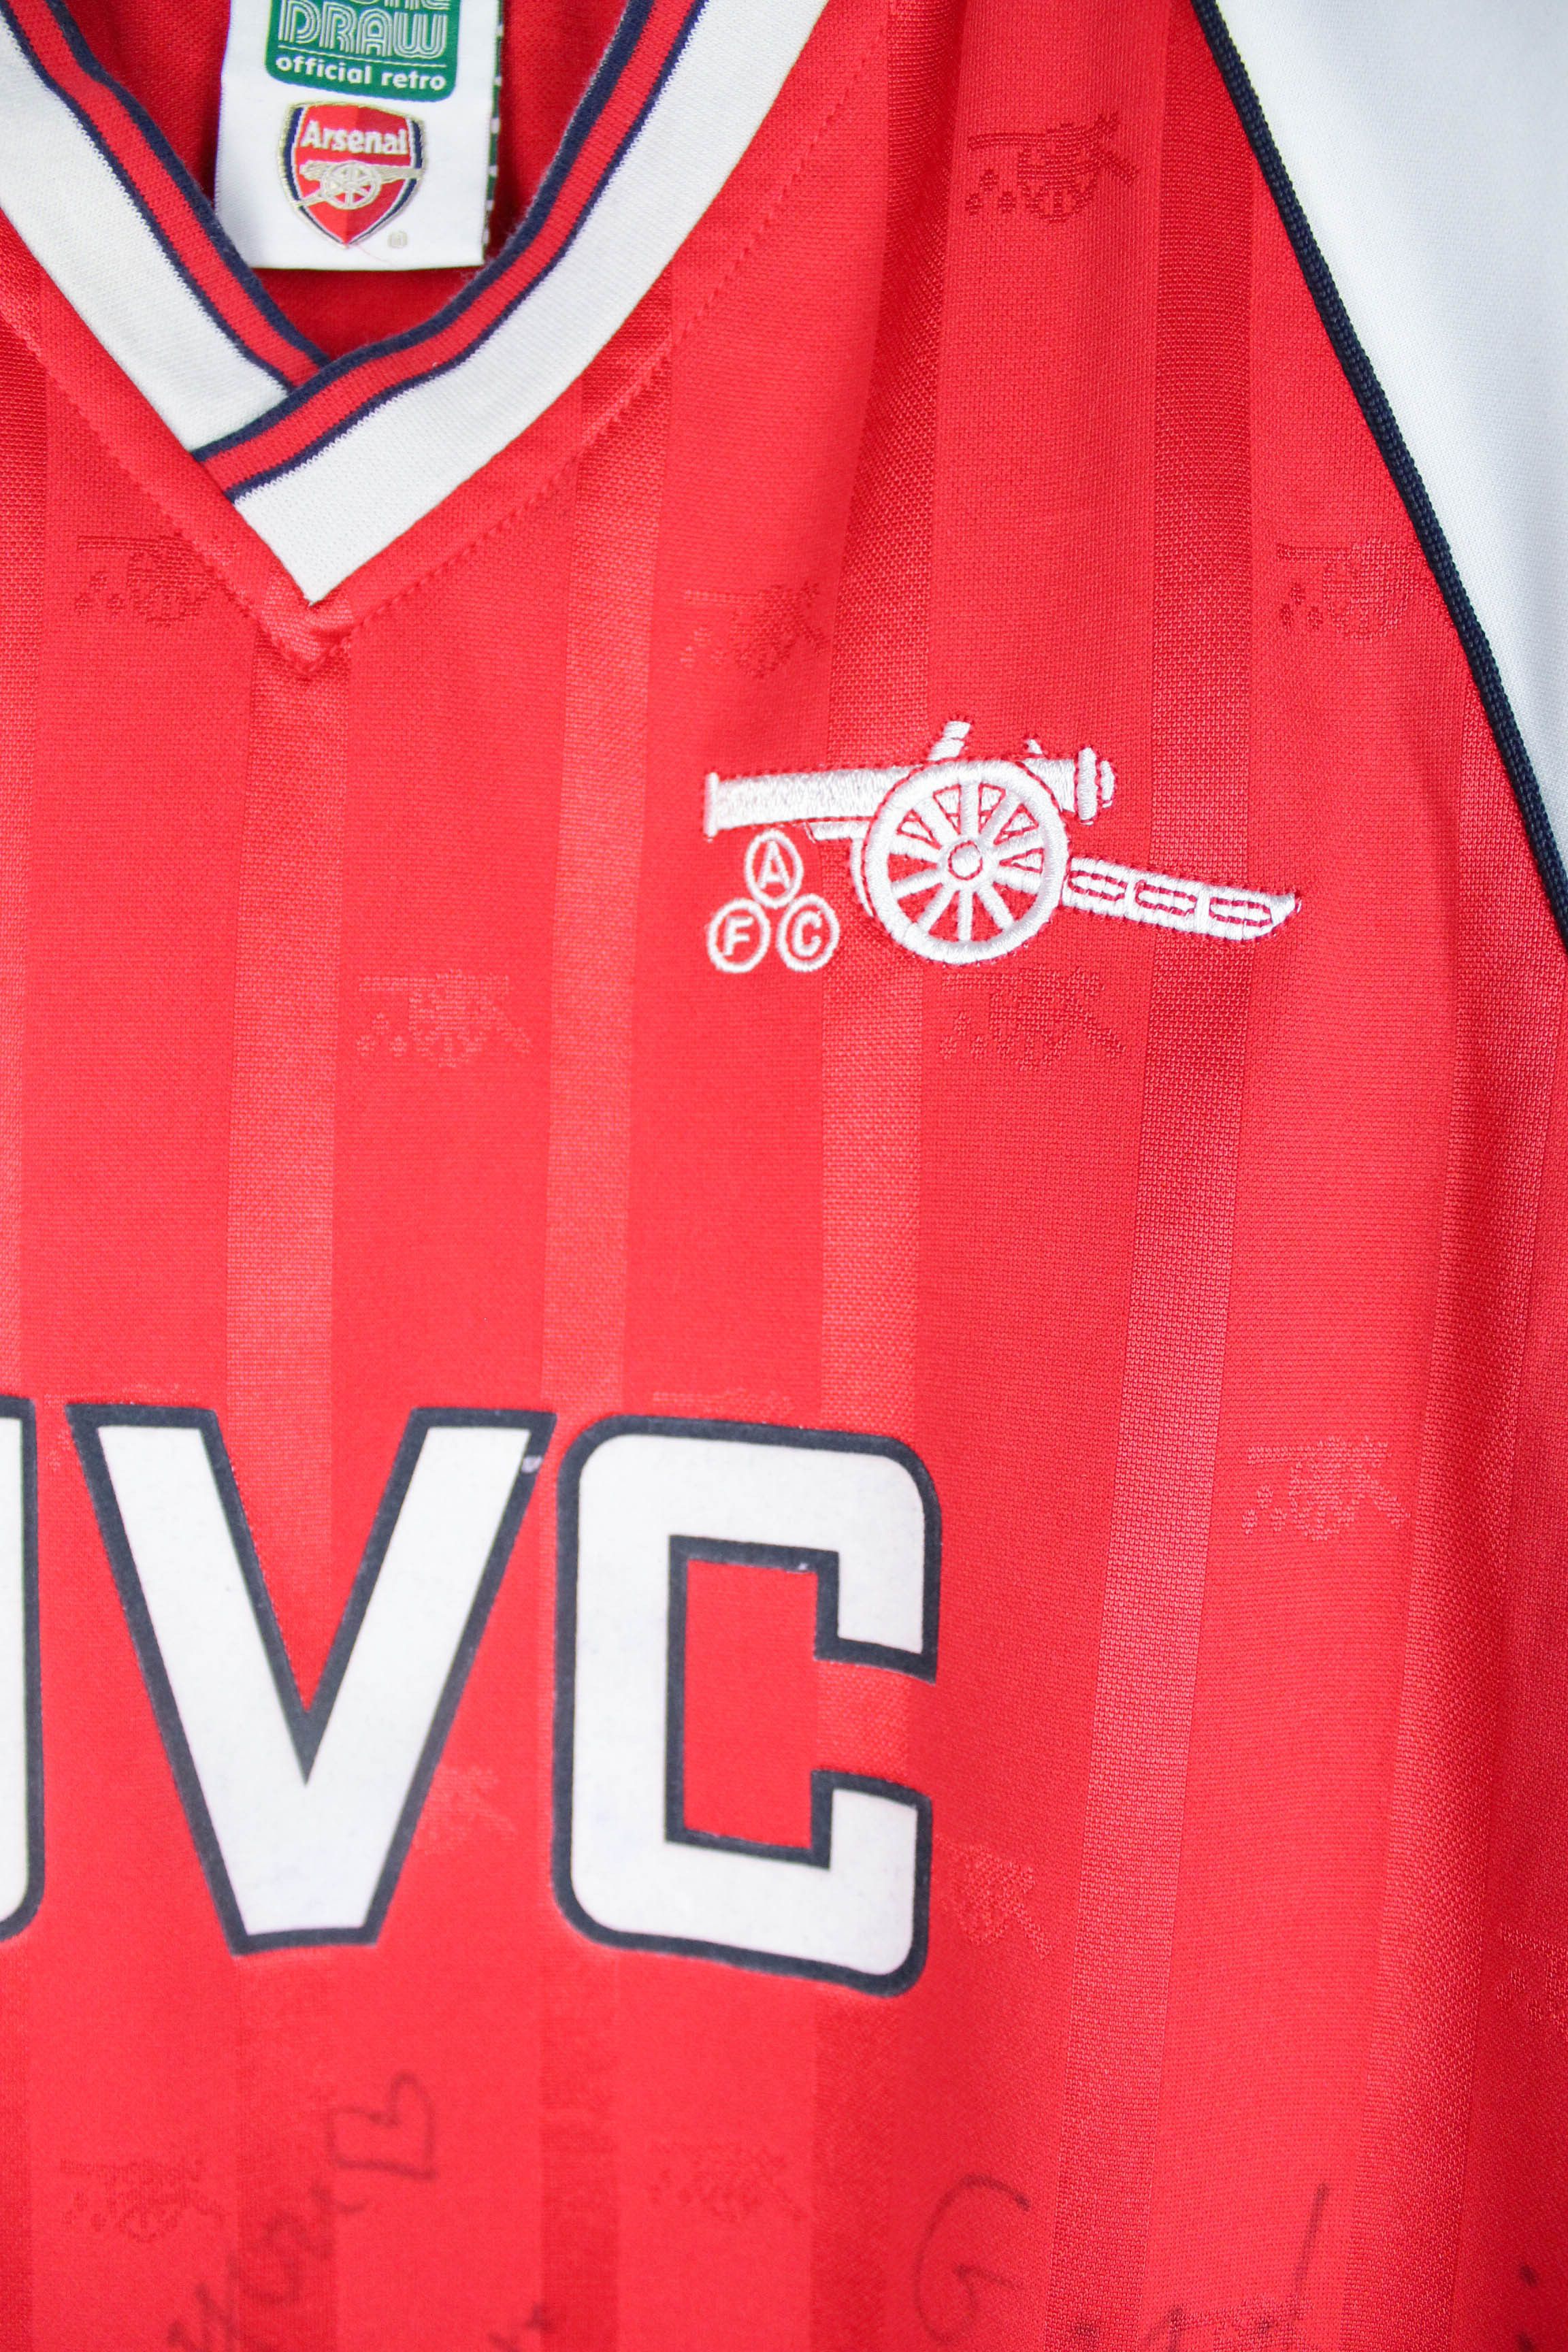 Vintage Arsenal JVC Official Retro Vintage Fans Autographs Jersey Size US M / EU 48-50 / 2 - 4 Thumbnail